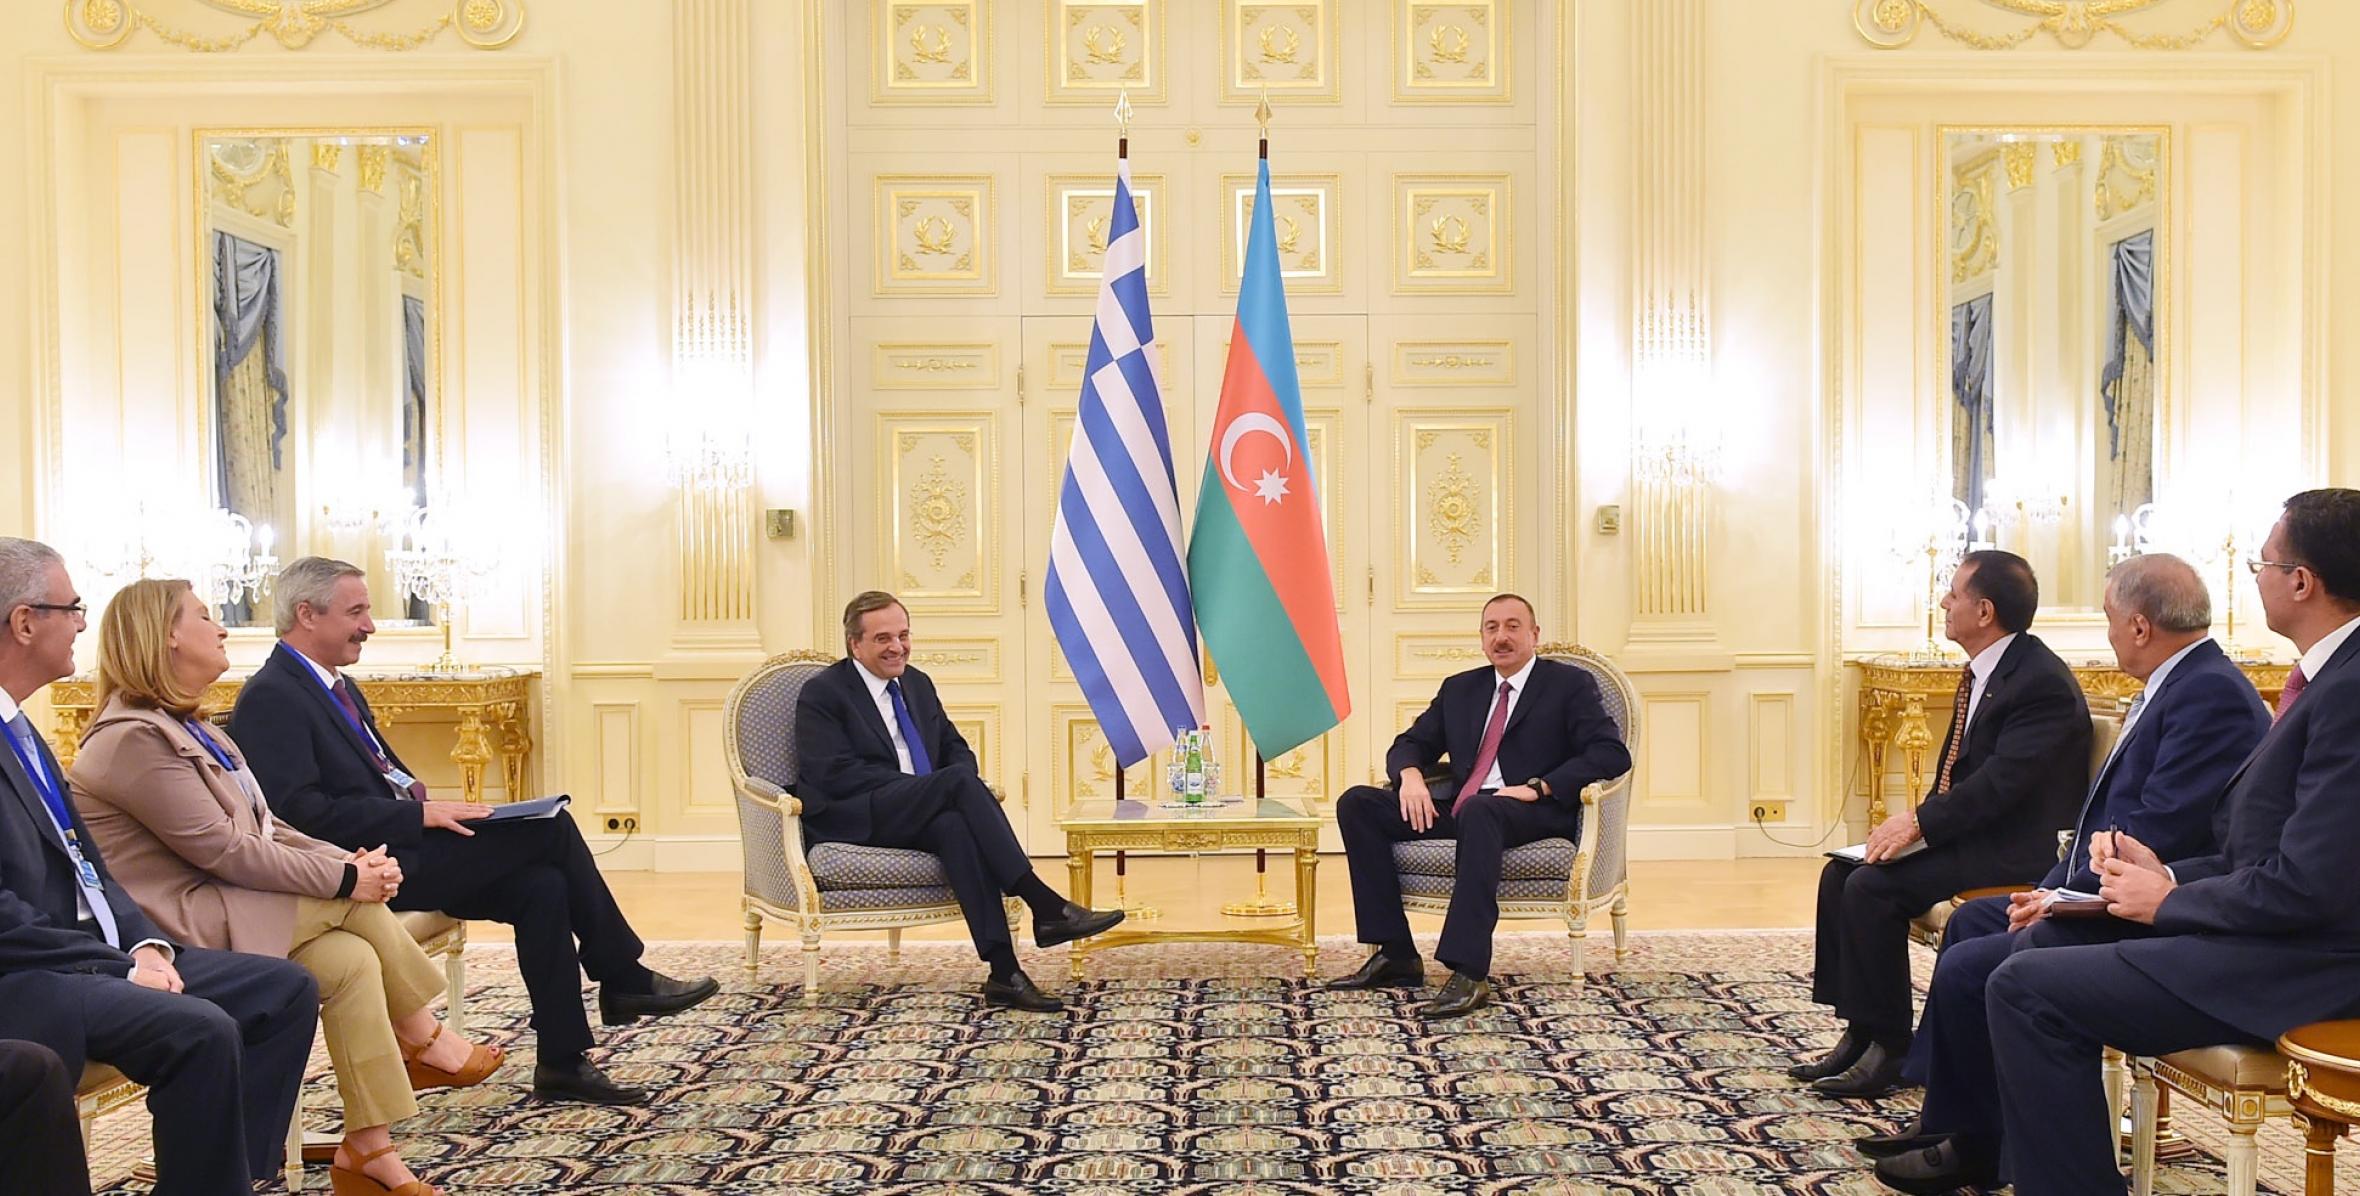 Состоялась встреча Ильхама Алиева с премьер-министром Греческой Республики Антонисом Самарасом в расширенном составе